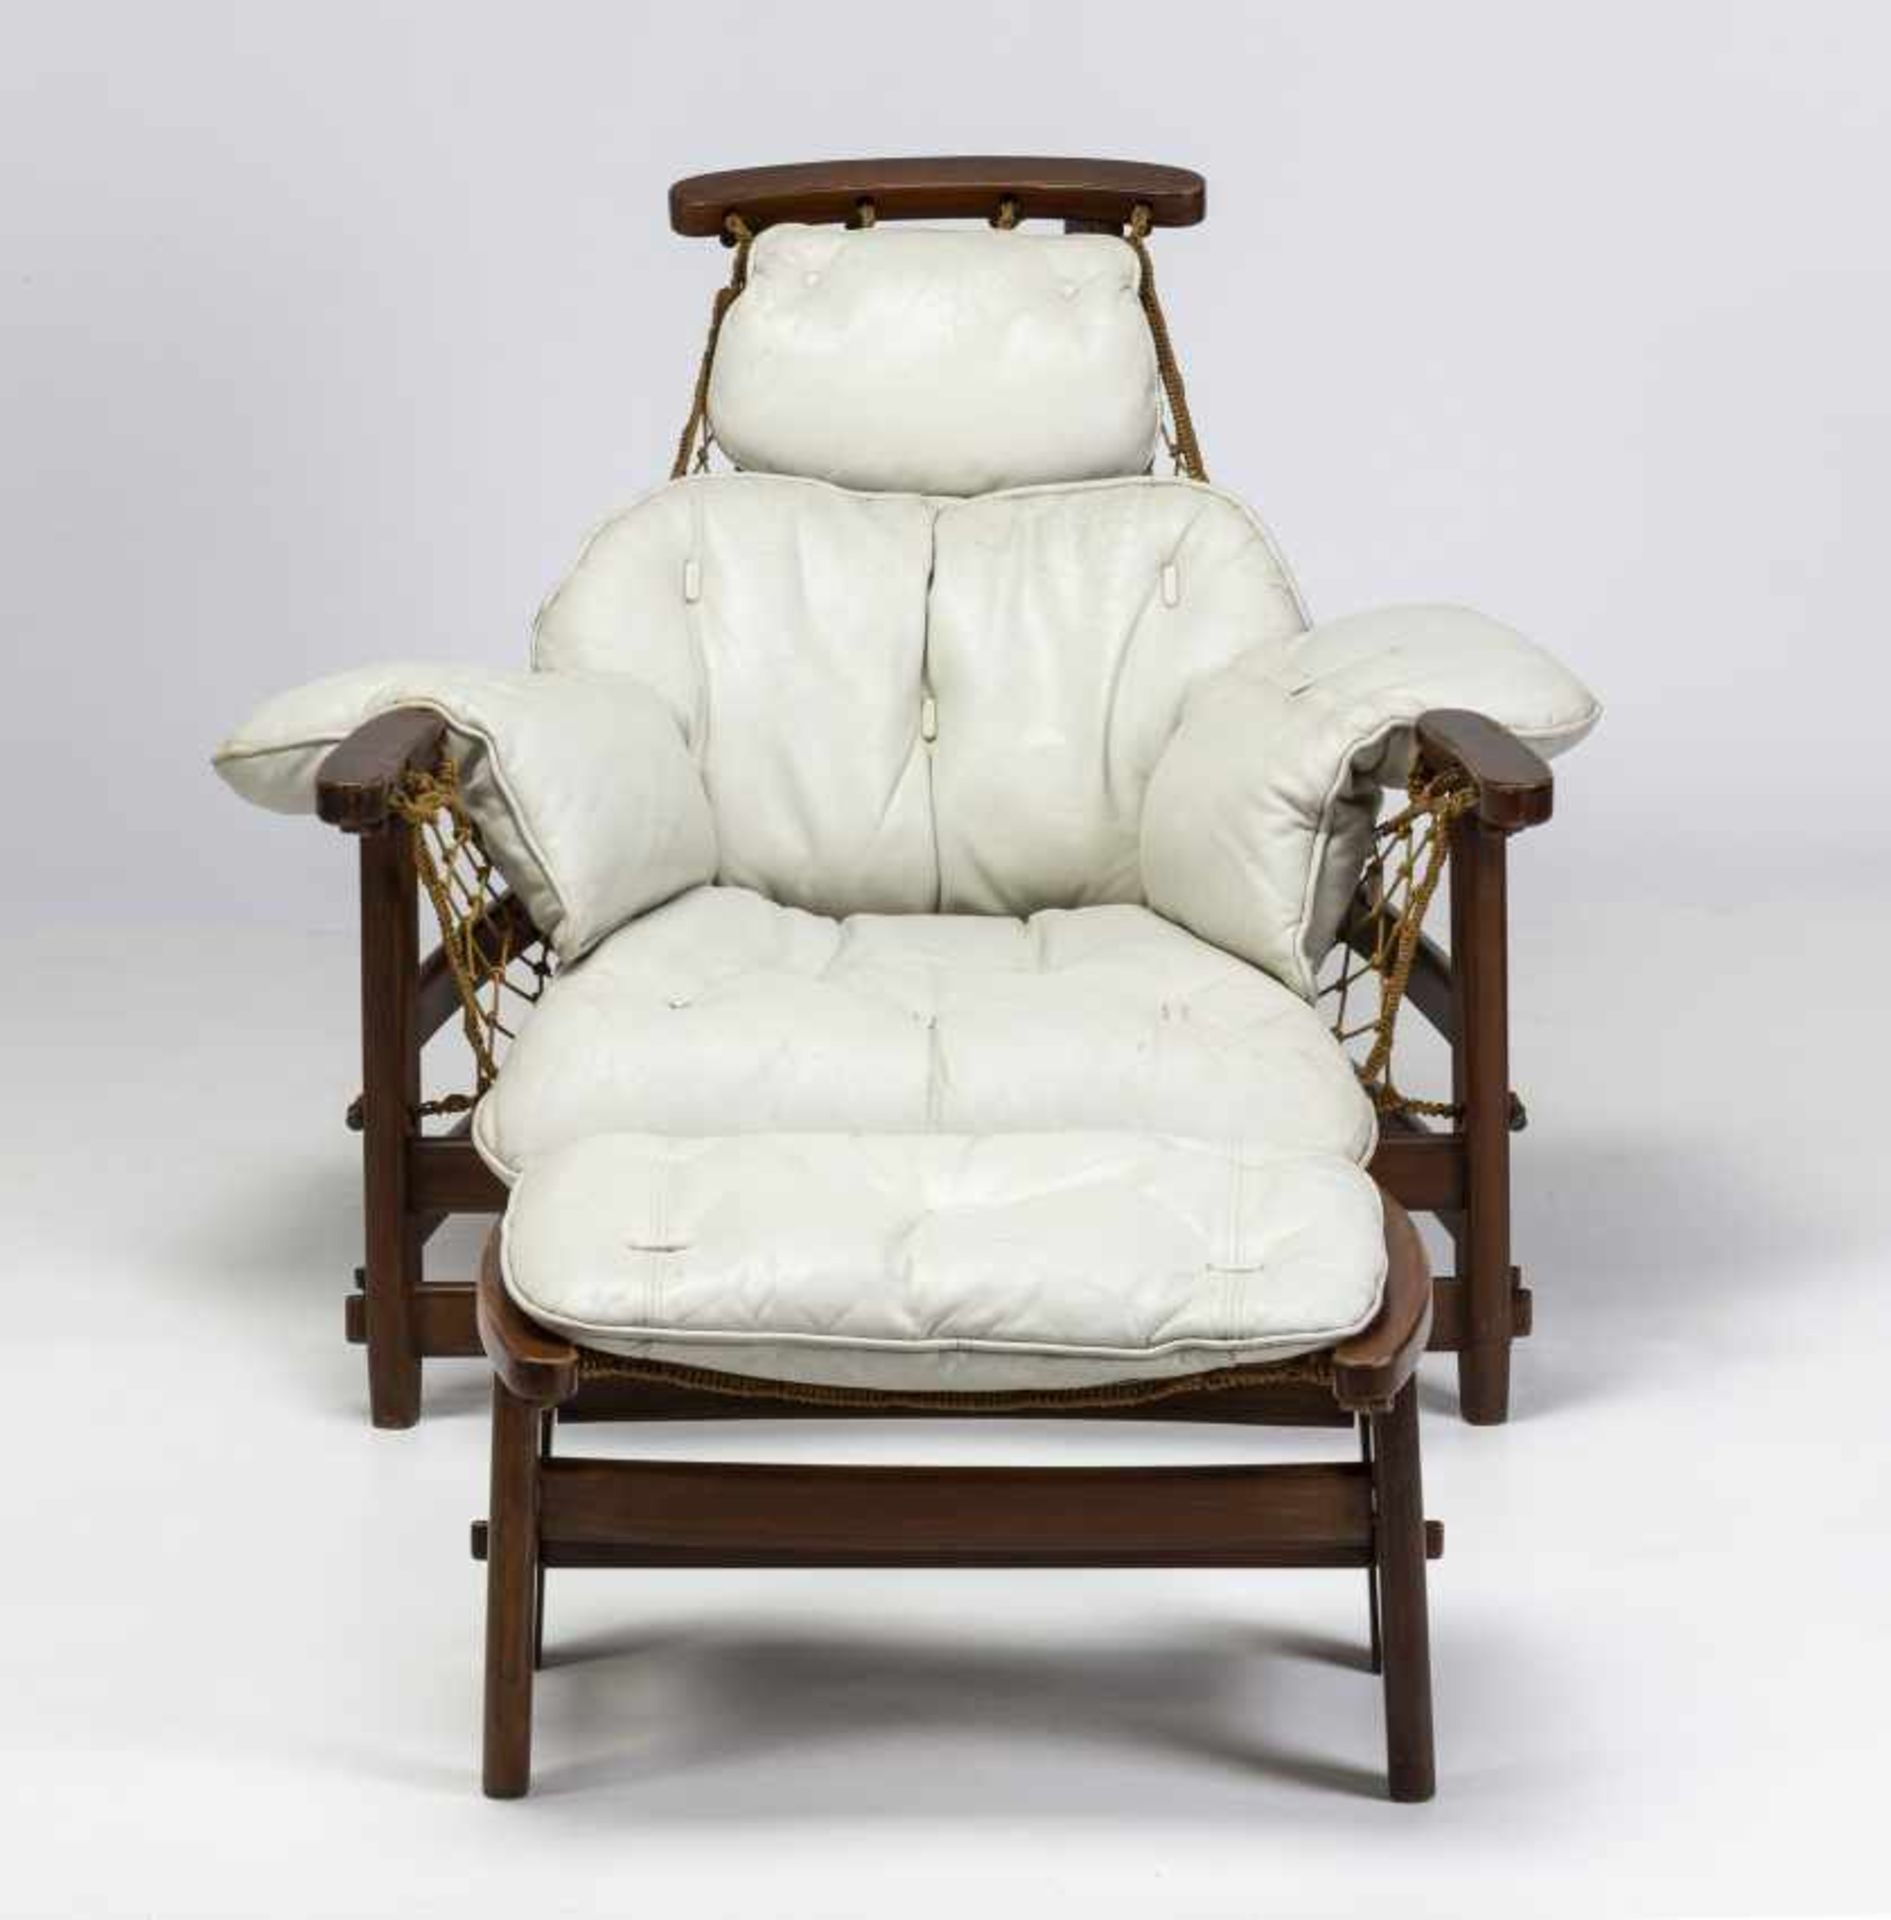 Jean Gillon, "Captain's" armchair with ottoman, Rosewood, sJean GillonIasi, 1919 - Sao Paulo, 2007" - Bild 2 aus 8